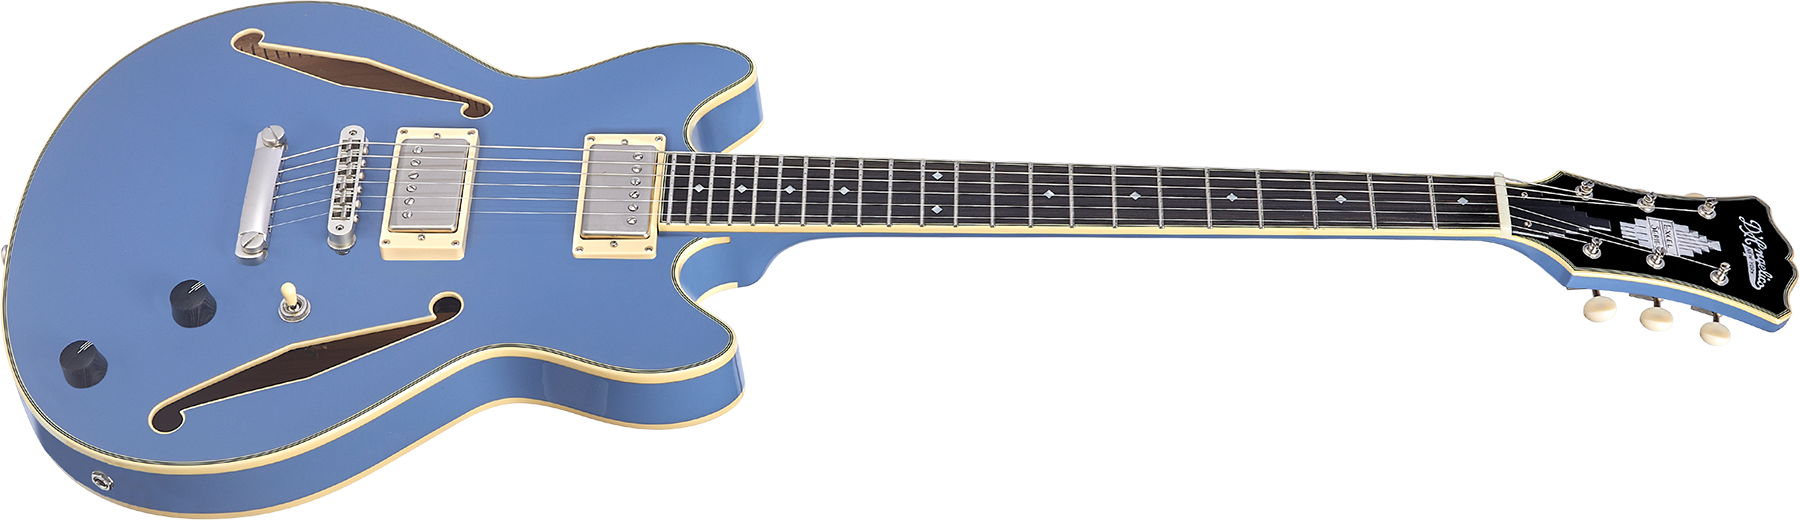 D'angelico Mini Dc Tour Excel 2h Ht Eb - Slate Blue - Semi hollow elektriche gitaar - Variation 1